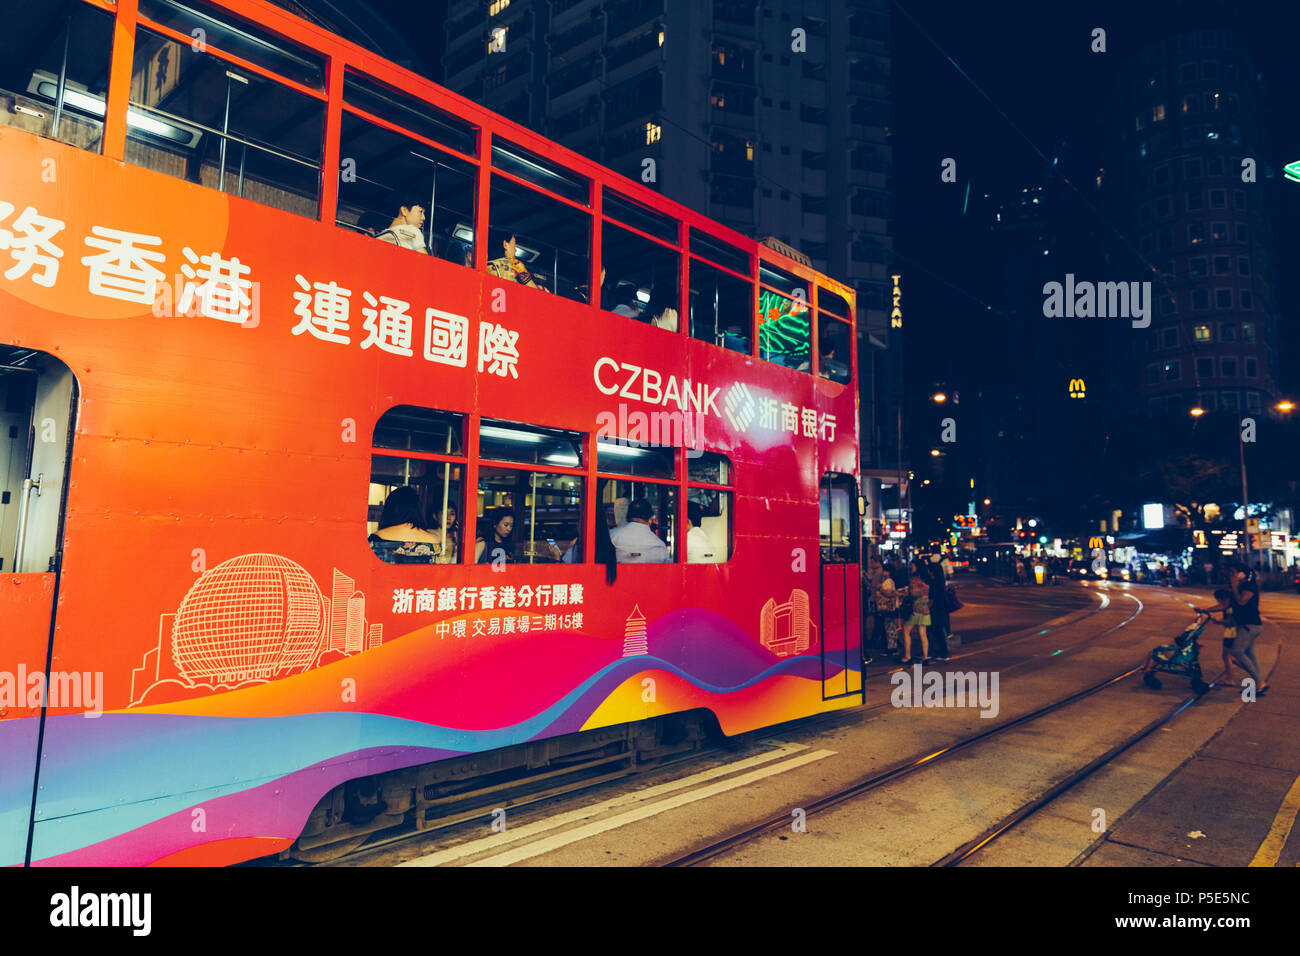 HONG KONG - MAY 28, 2018: Tram on street at night in central Hong Kong Stock Photo